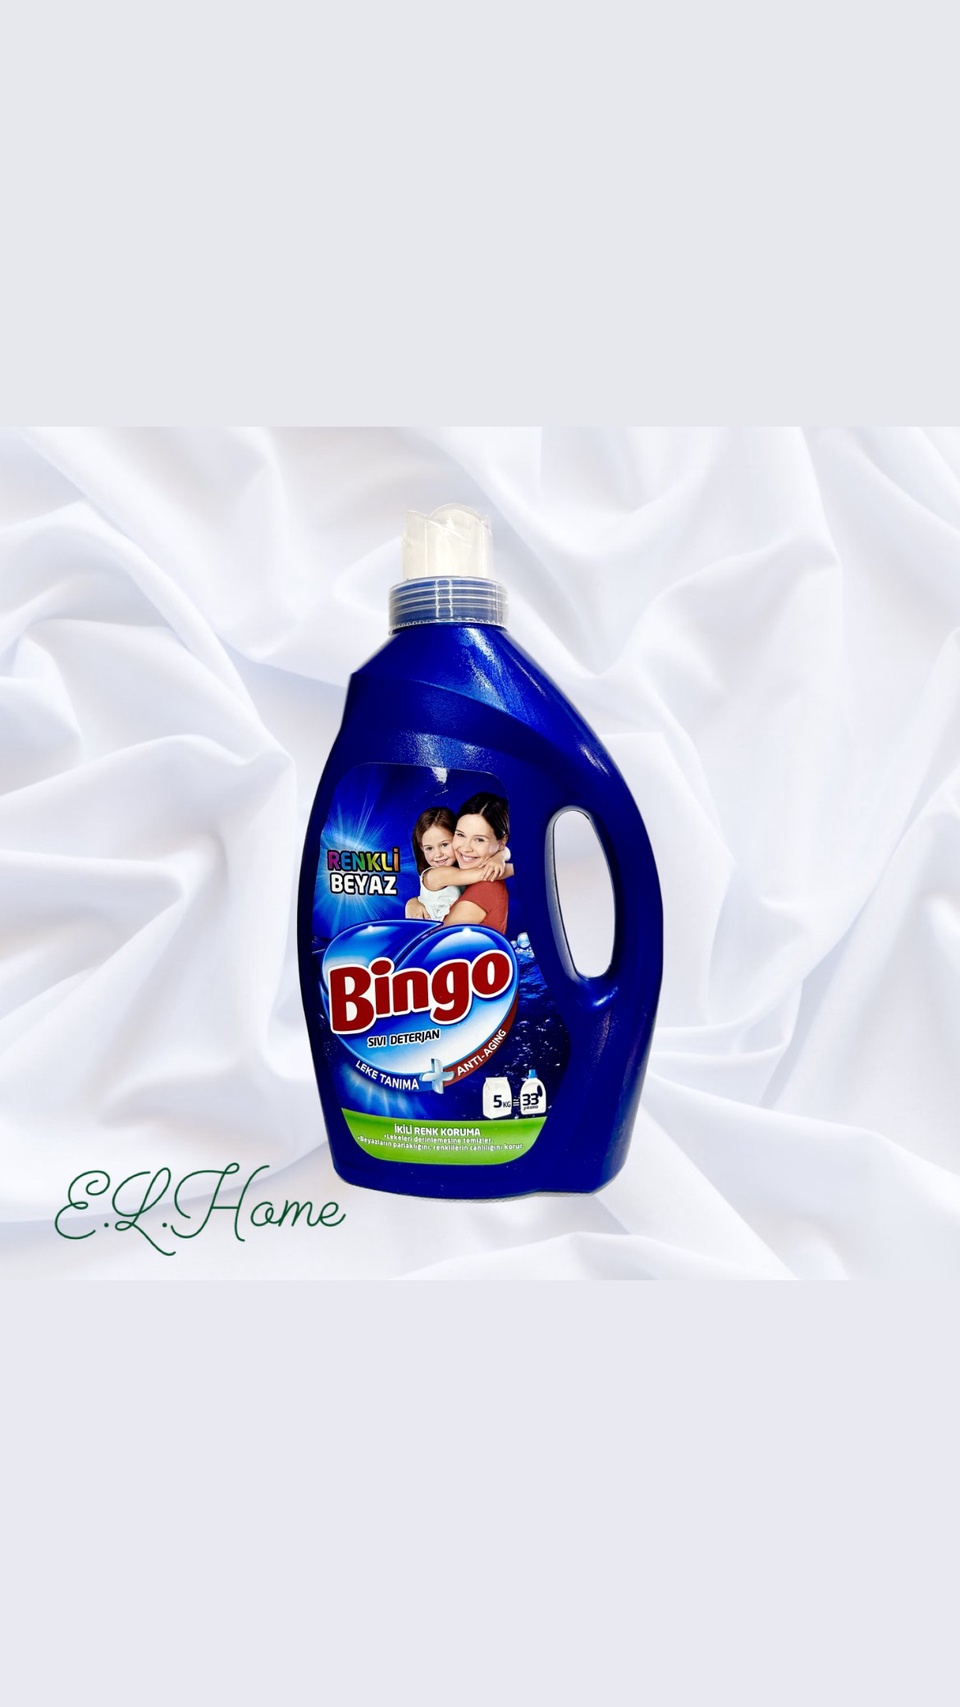 Гель для стирки цветного и белого белья стиральный порошок жидкий концентрат Bingo 2,145 л, Турция - 700 ₽, заказать онлайн.